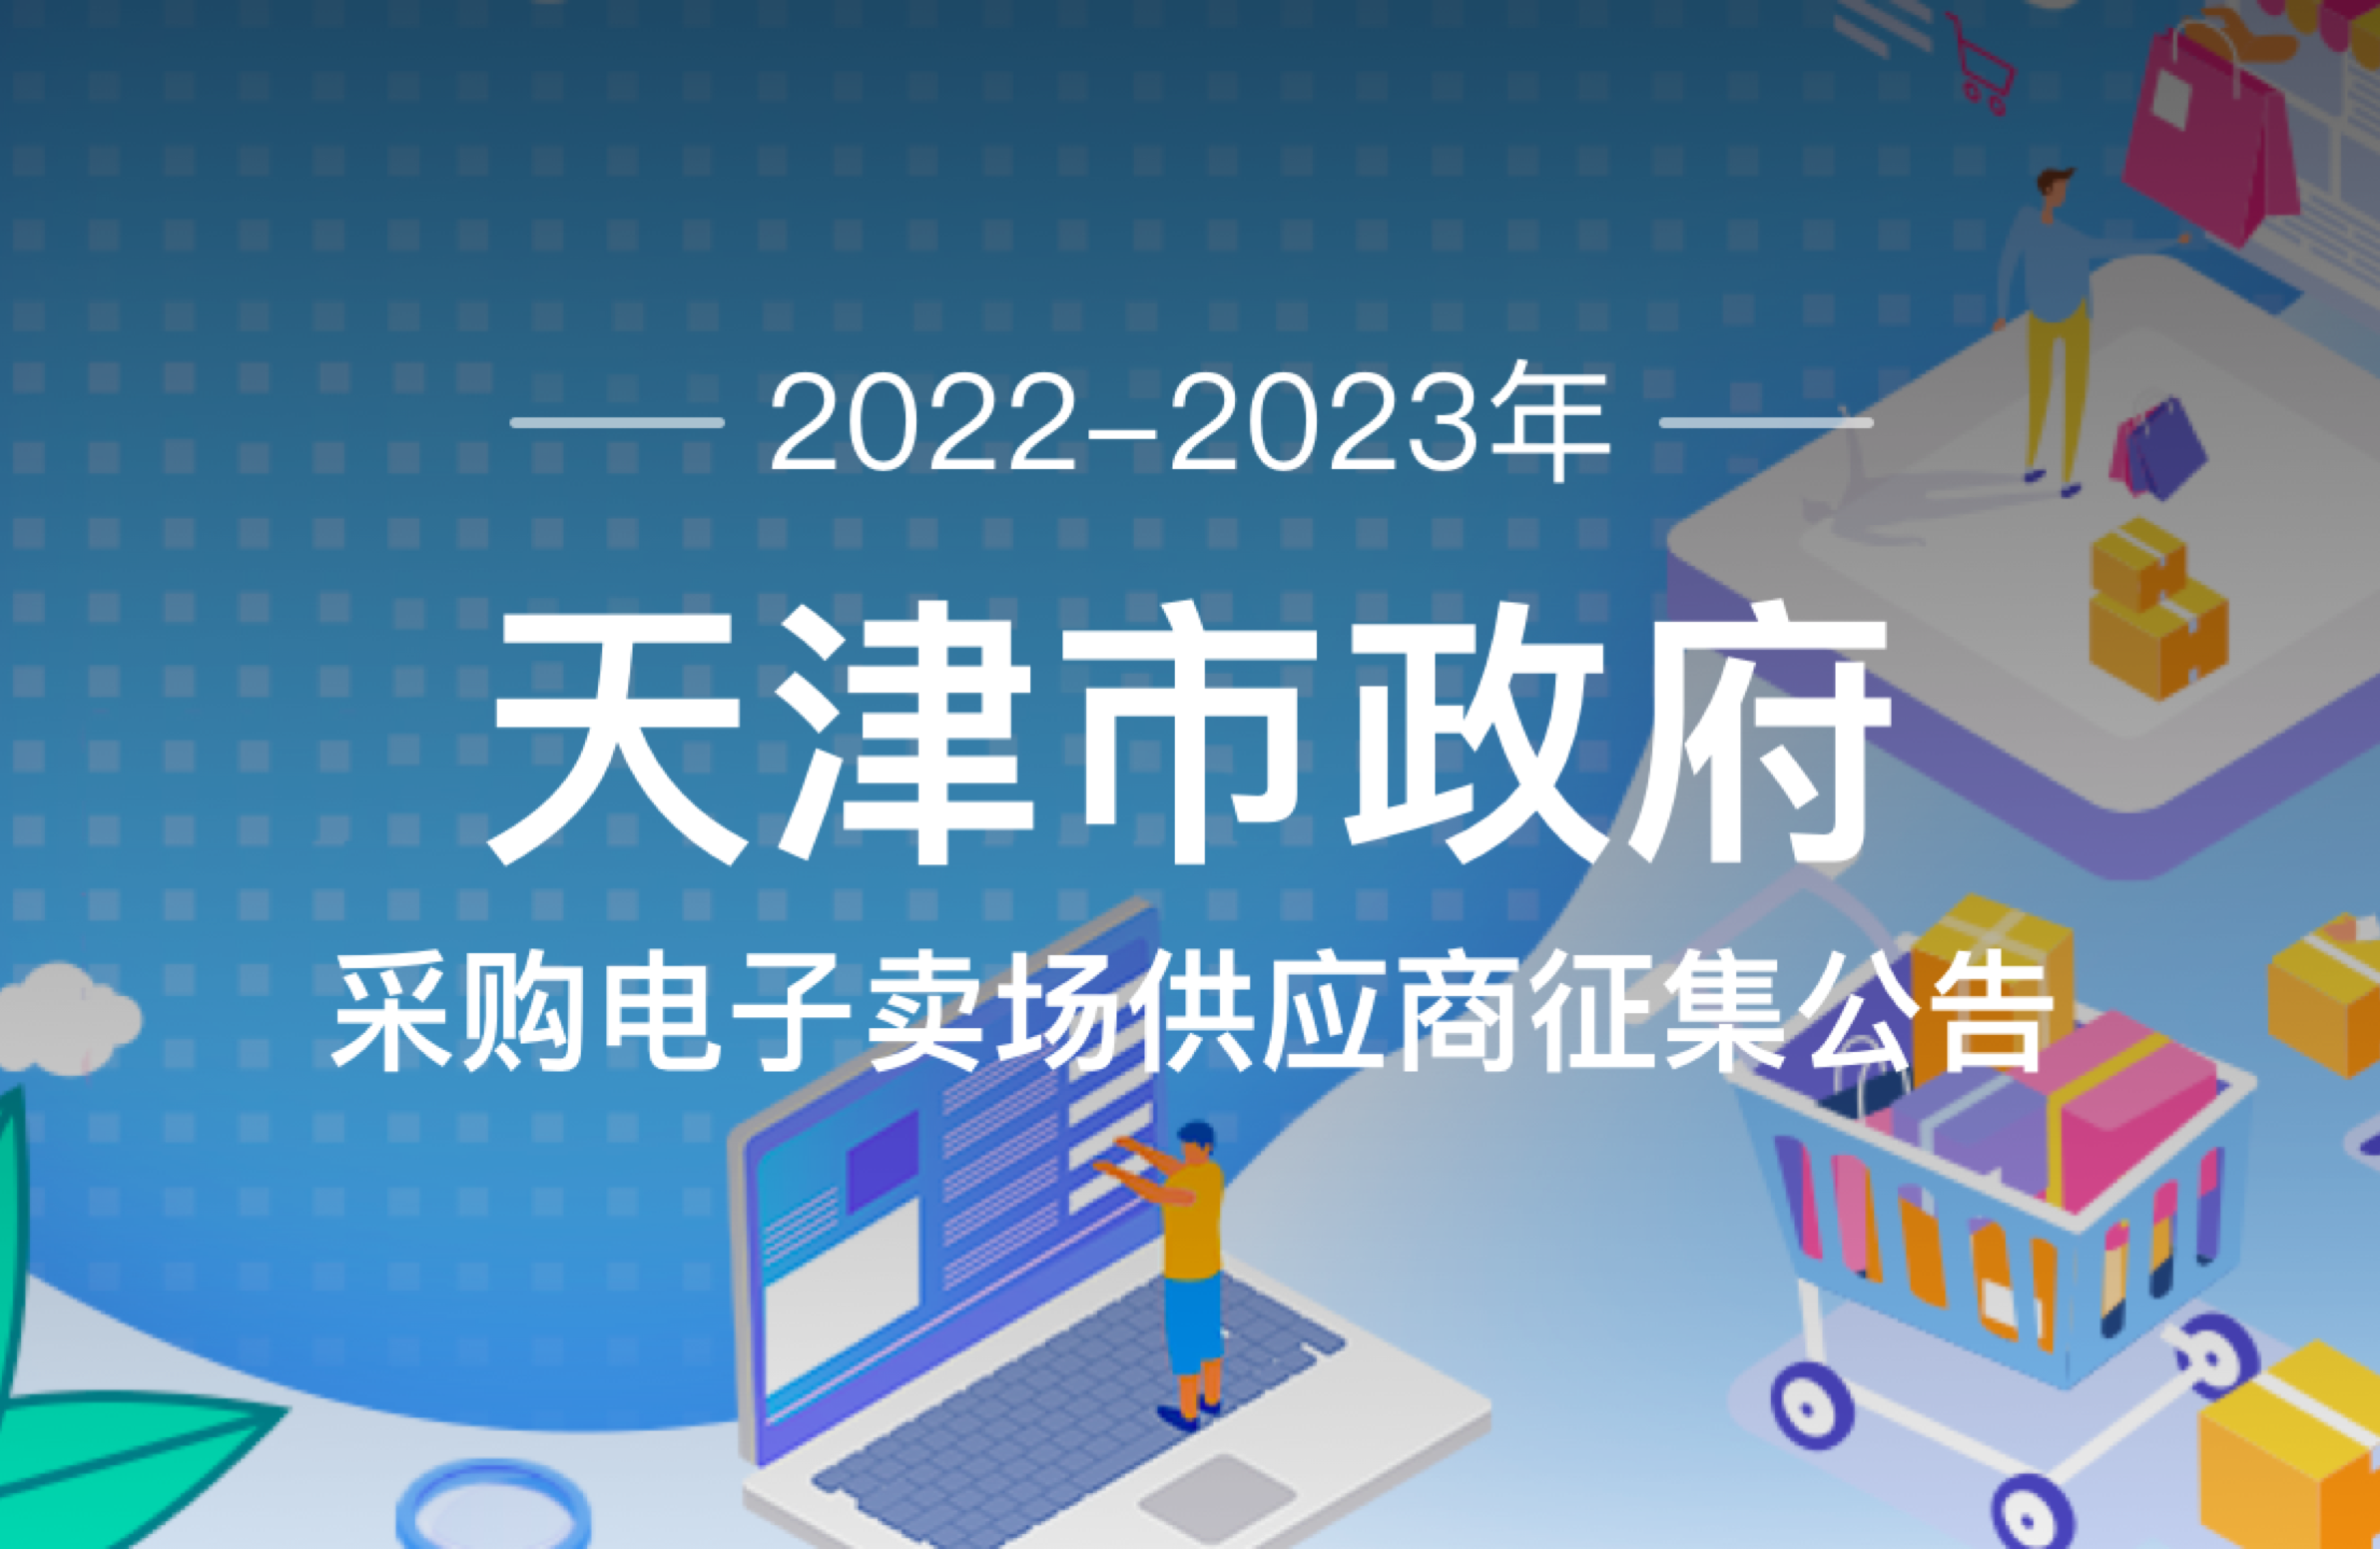 2022-2023年天津市政府采购中心电子卖场供应商征集公告